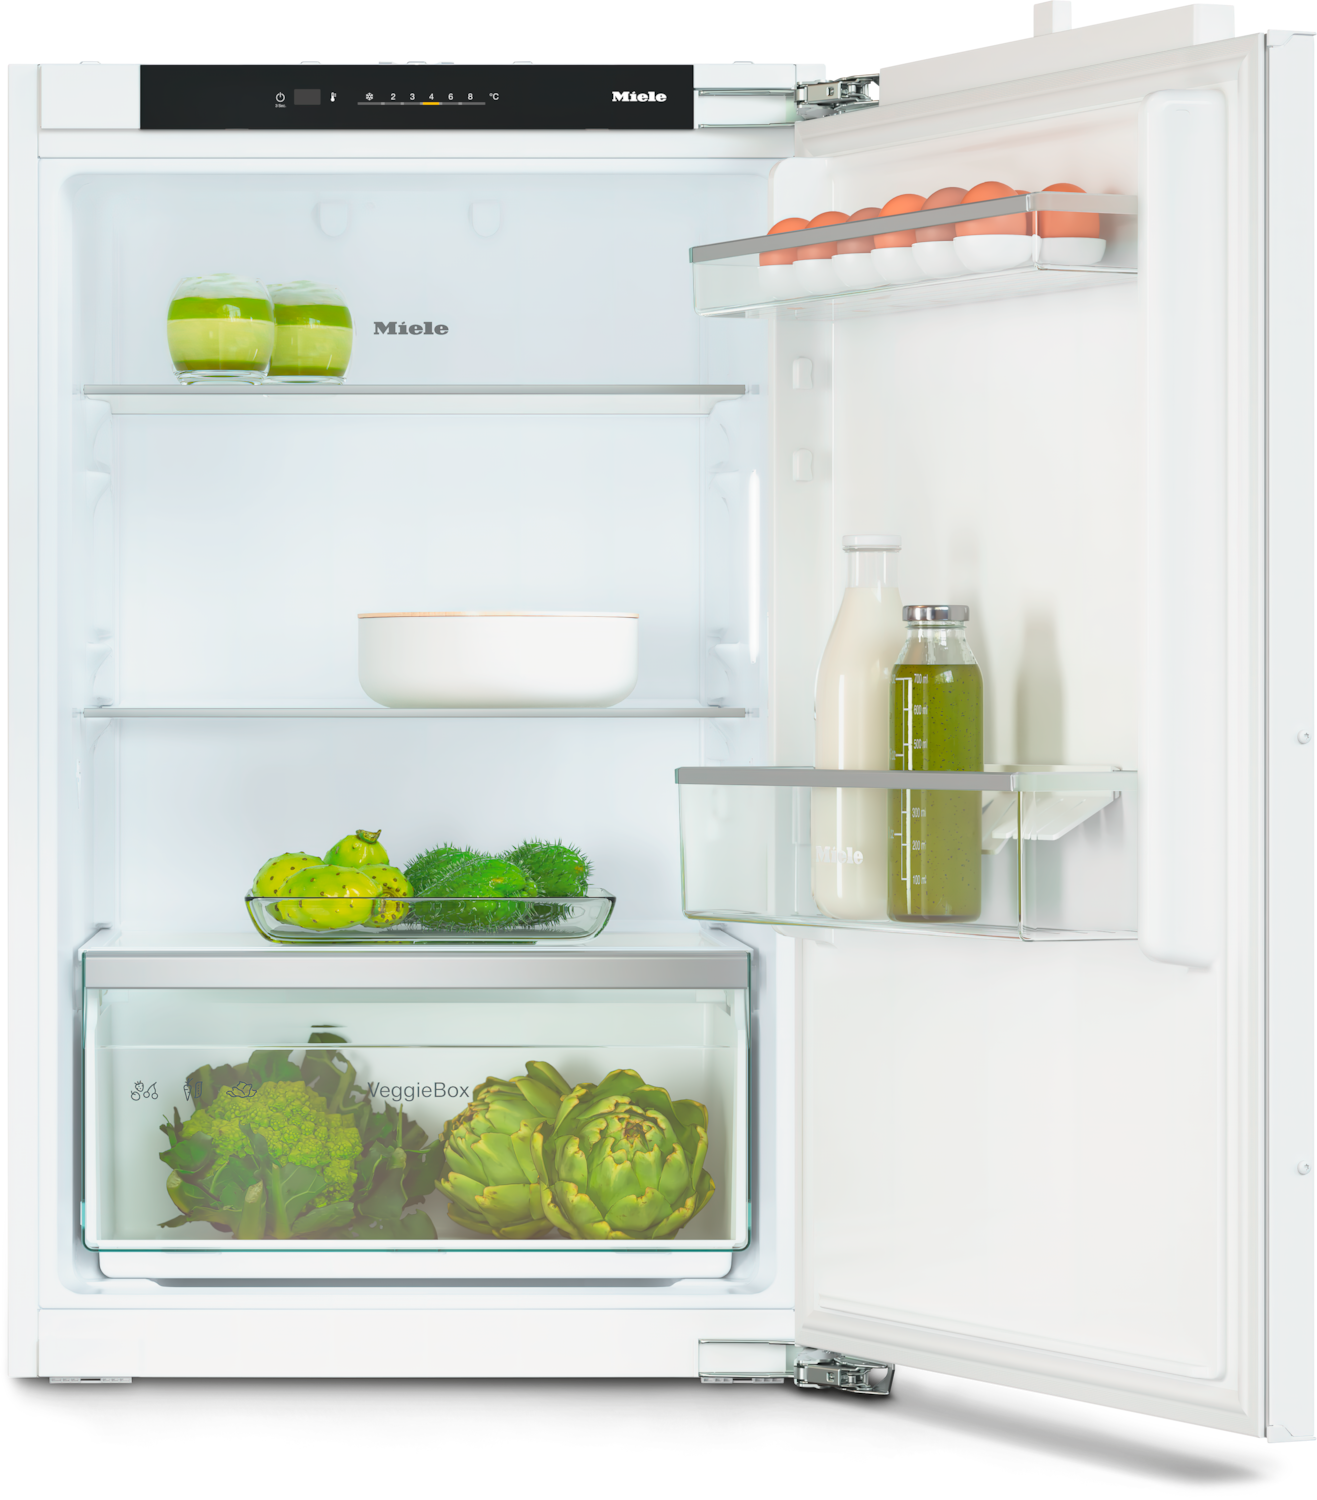 Iebūvējams ledusskapis ar automātisko intensīvo dzesēšanu, 87 cm augstums (K 7125 E) product photo